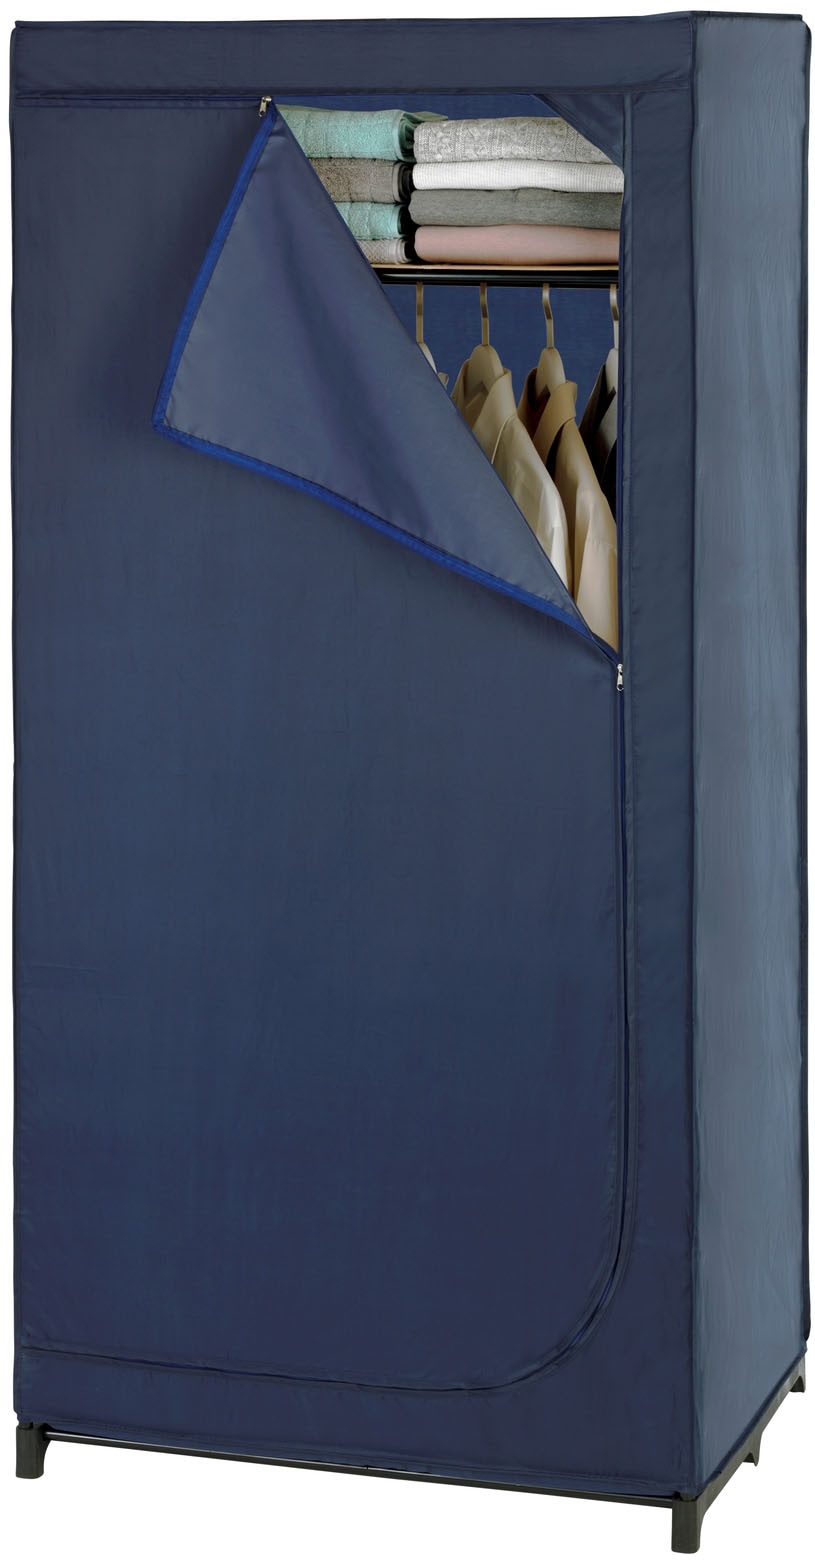 WENKO Kleiderschrank »Business«, Polyester-Qualität, mit Ablage, Höhe 160 cm